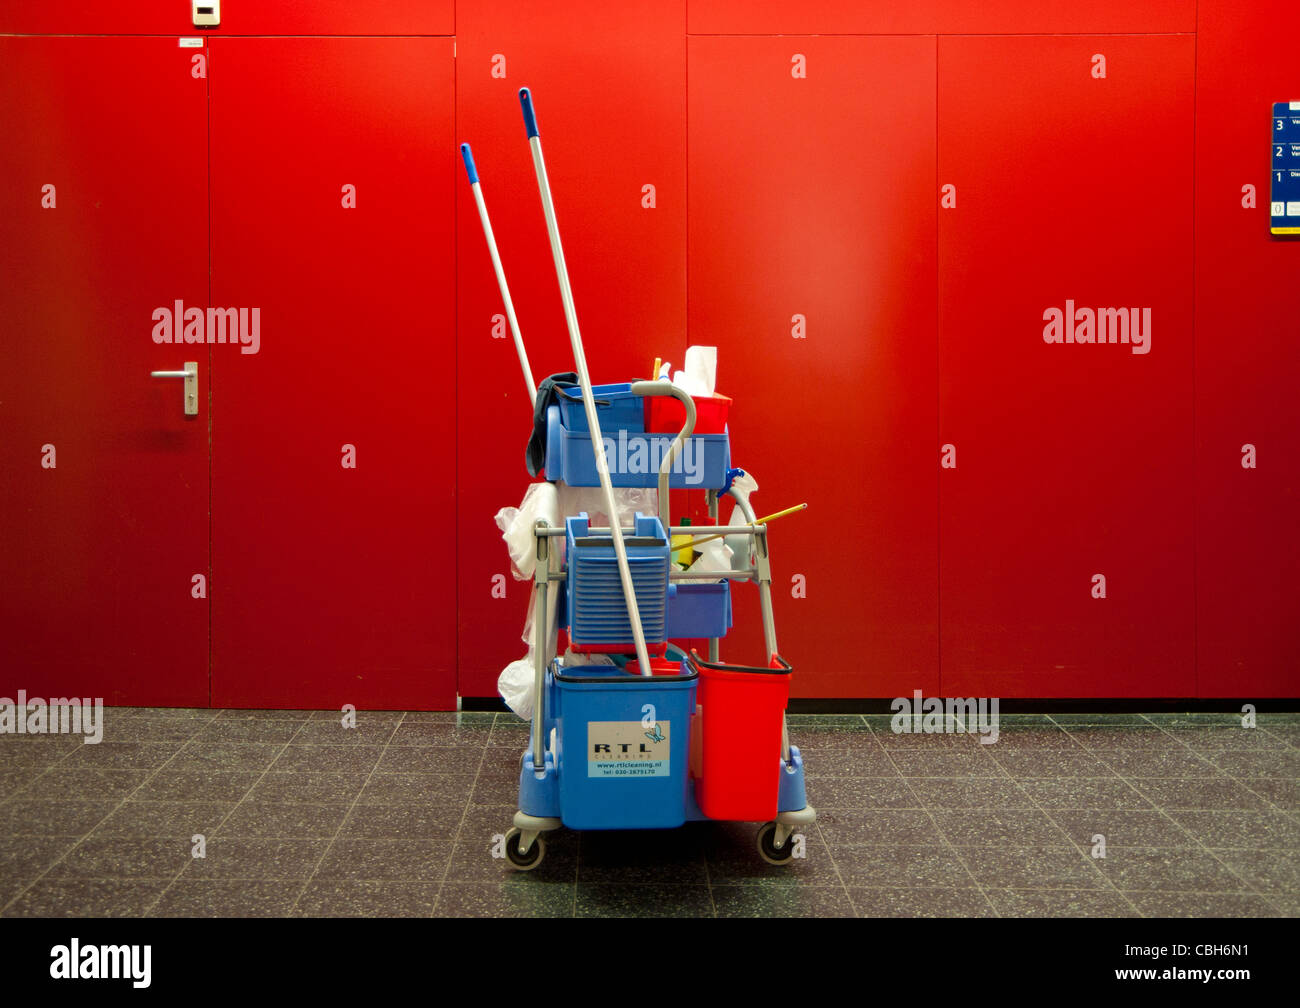 Composizione con pareti rosse e prodotti per la pulizia, hall, tensione, avventure Foto Stock